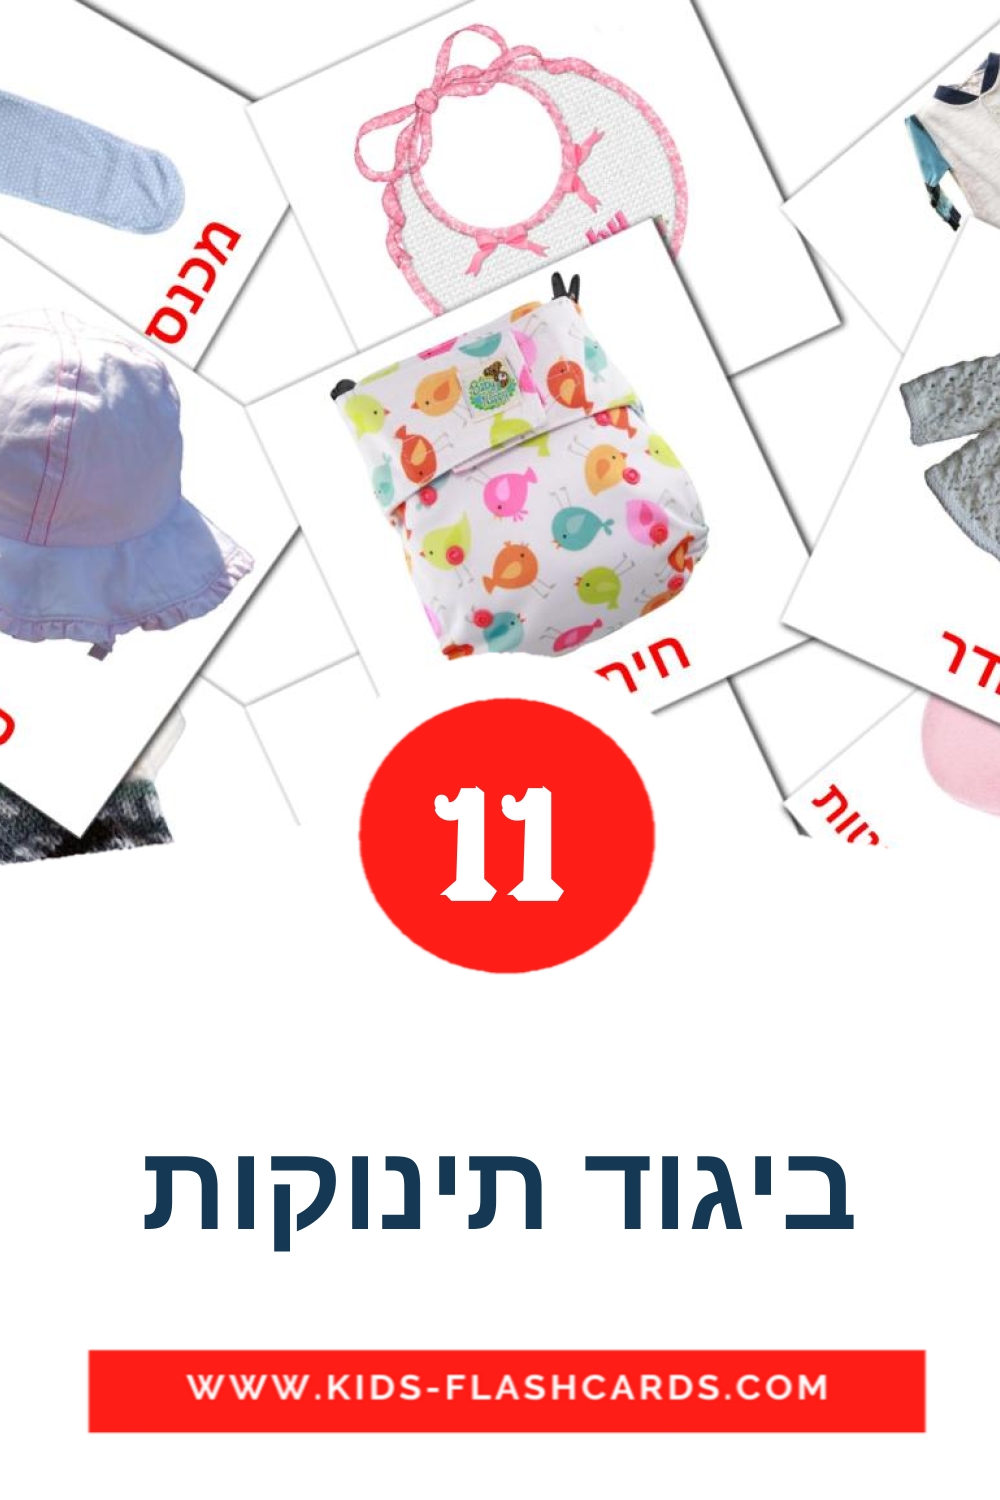 11 ביגוד תינוקות Picture Cards for Kindergarden in hebrew